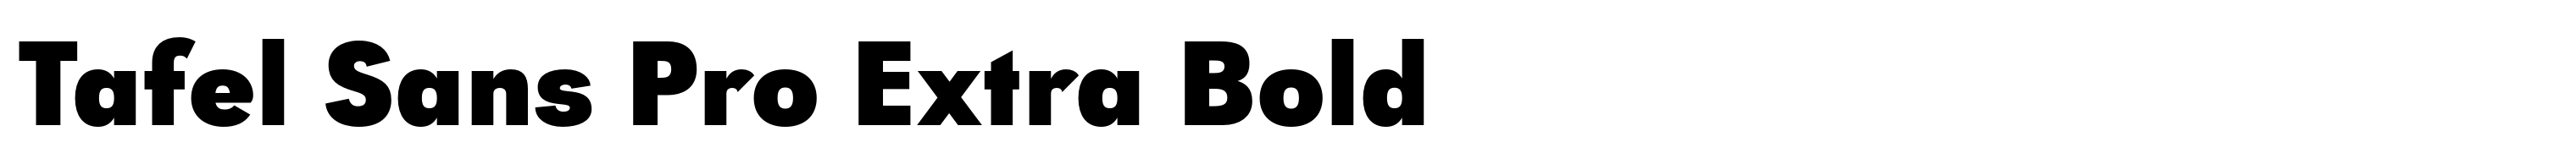 Tafel Sans Pro Extra Bold